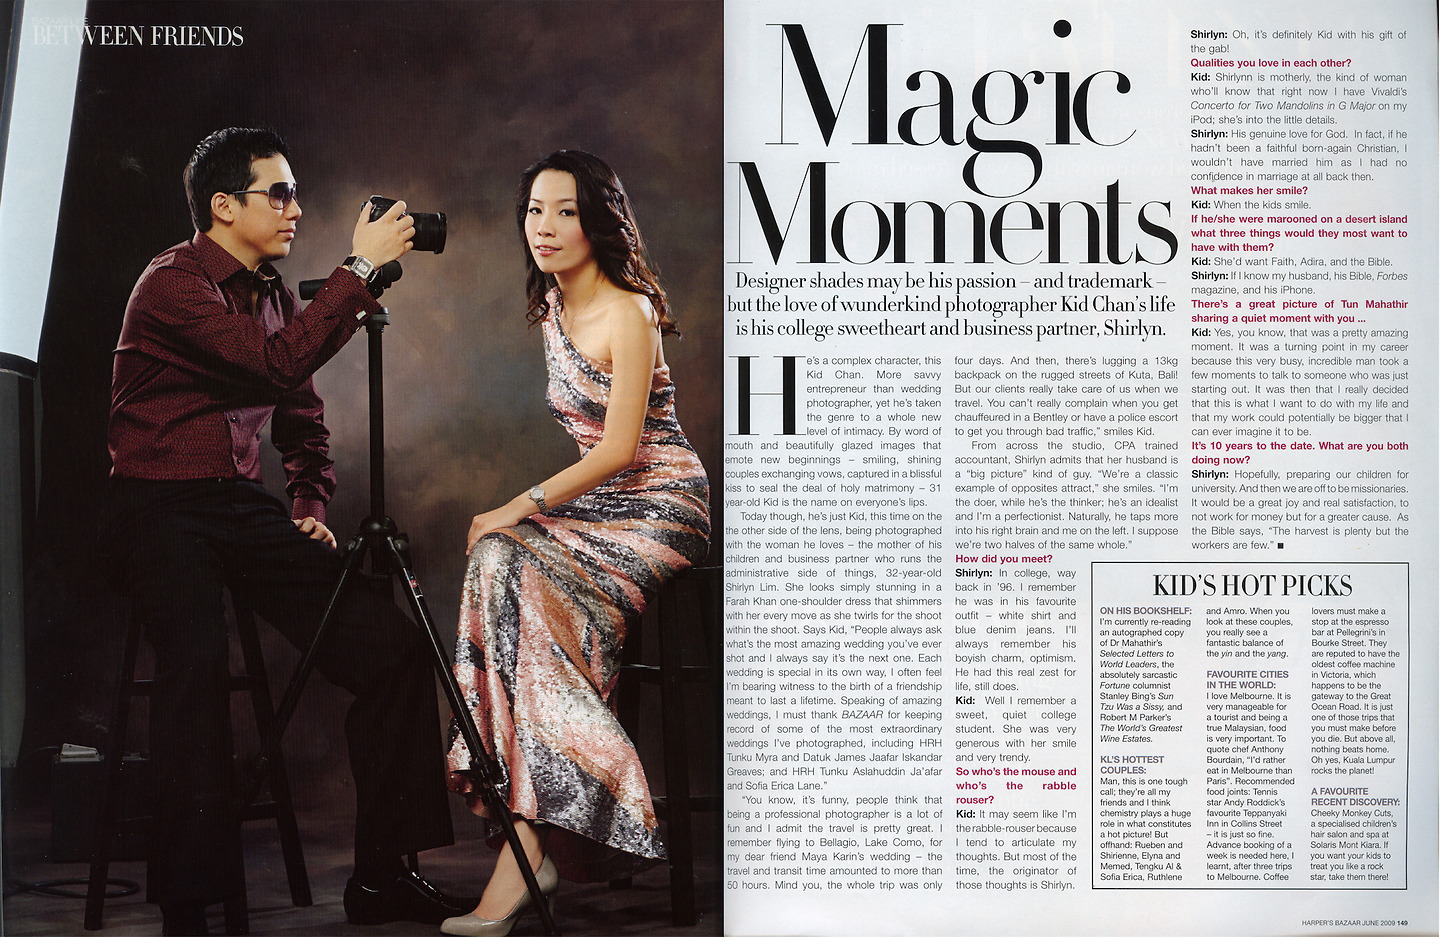 Harper's Bazaar: Magic Moments